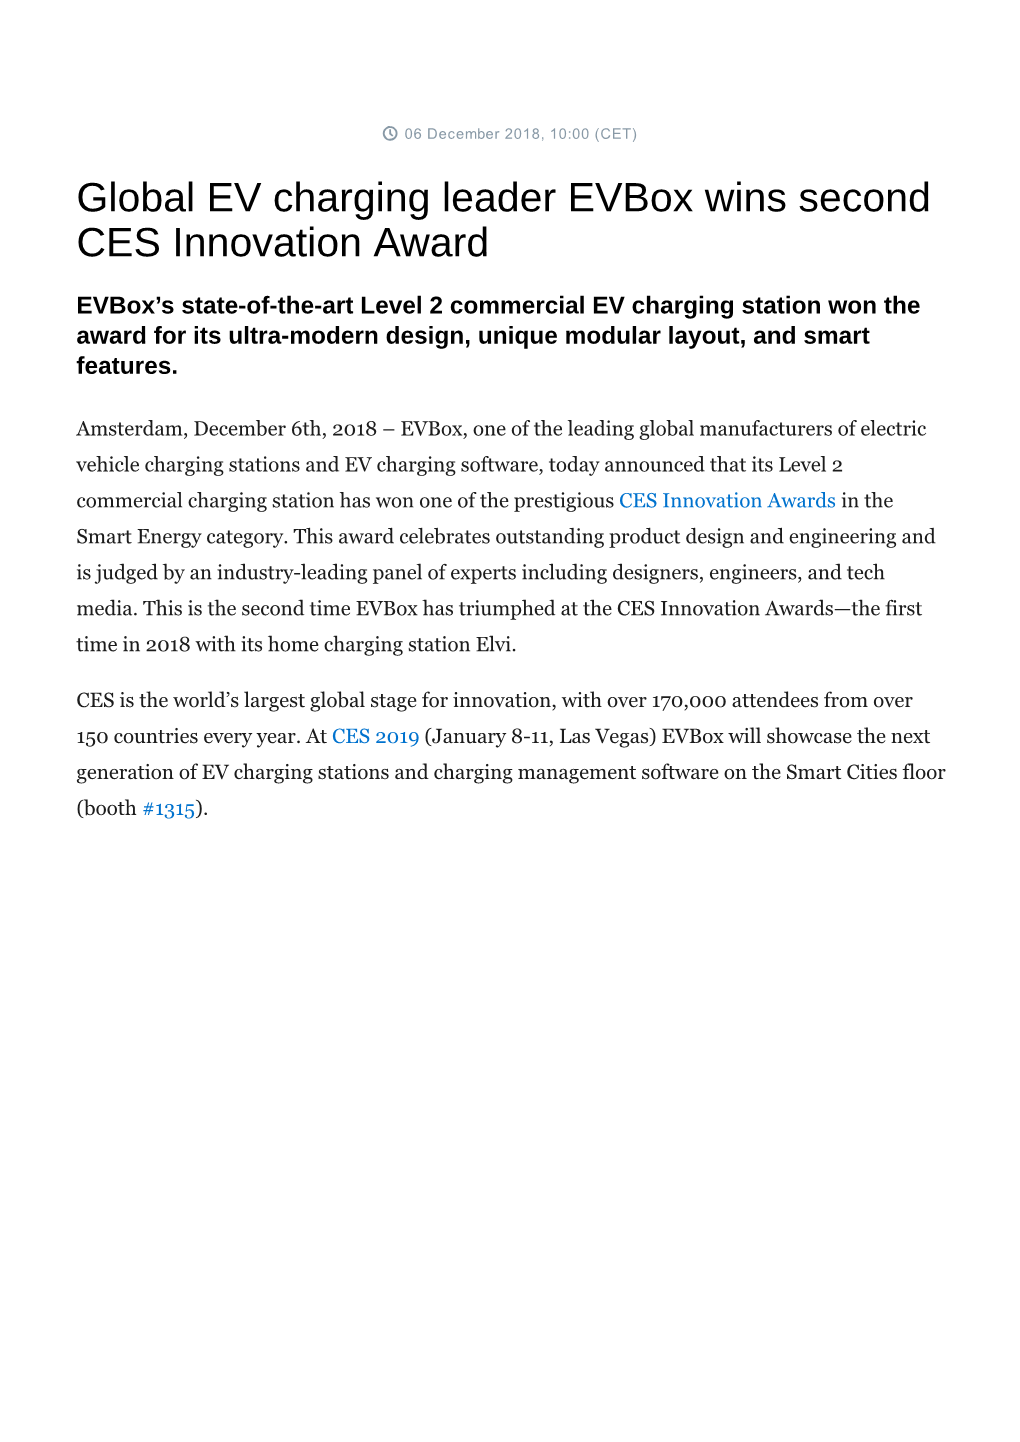 Global EV Charging Leader Evbox Wins Second CES Innovation Award